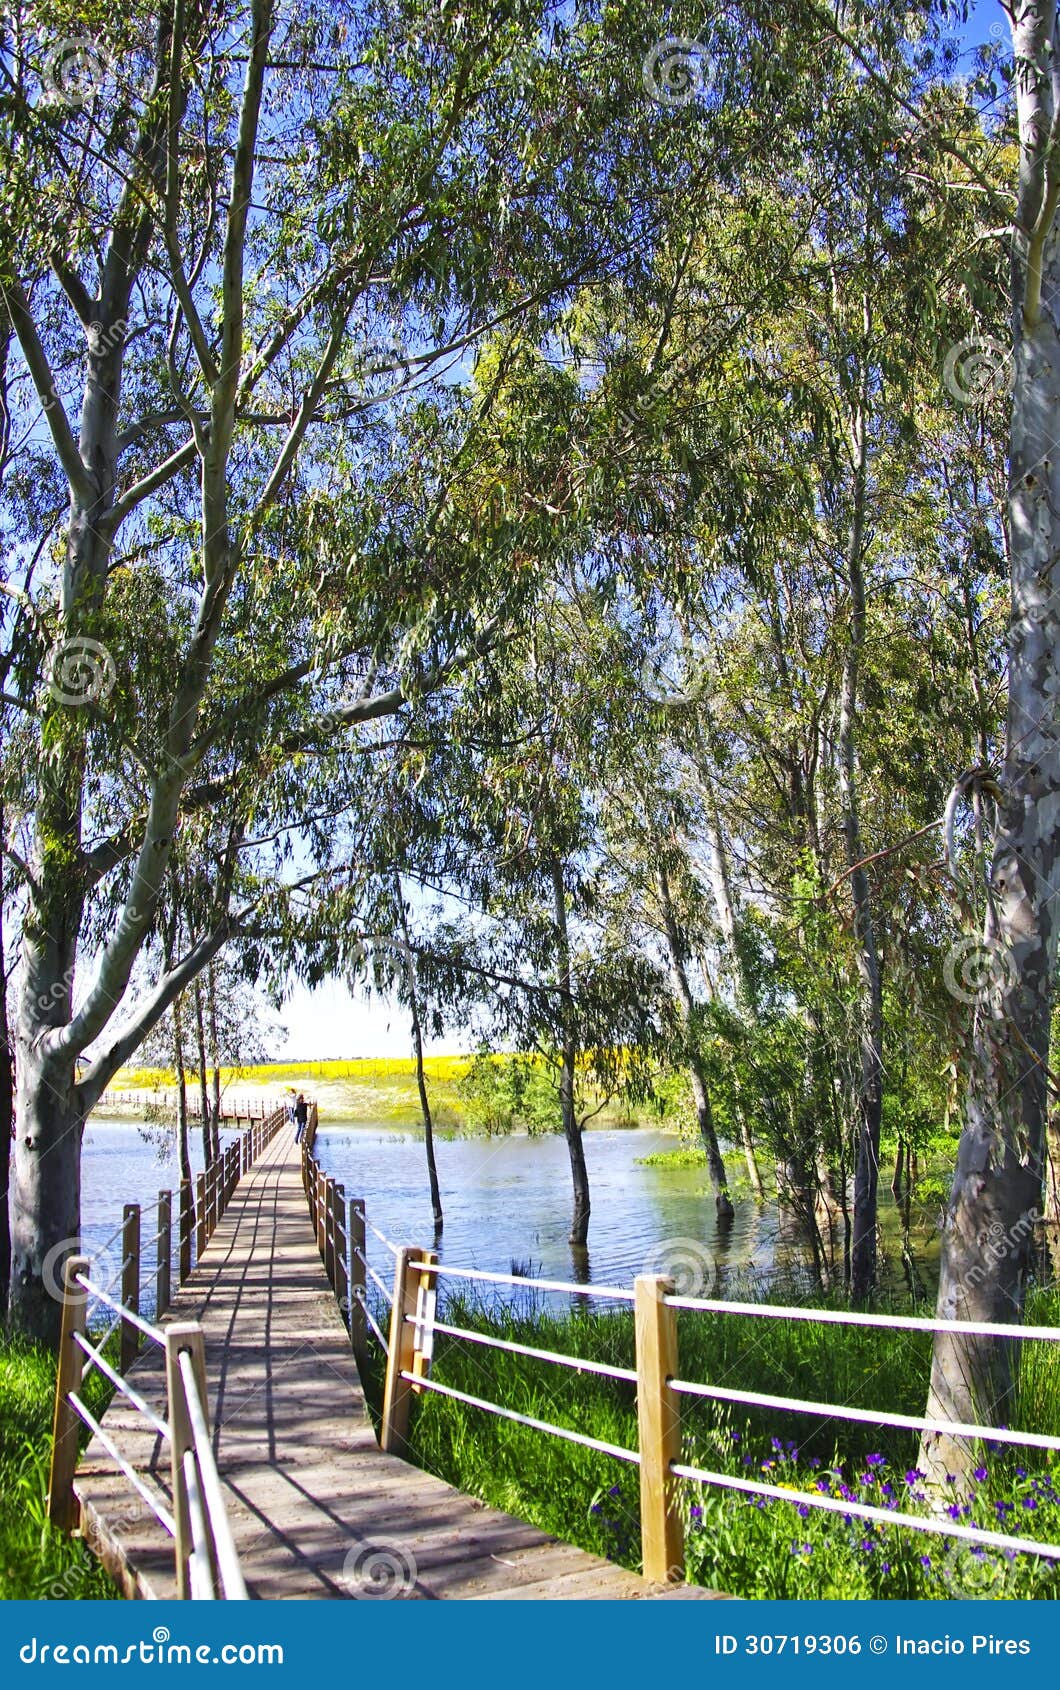 wooden bridge into the lake of alqueva , portugal